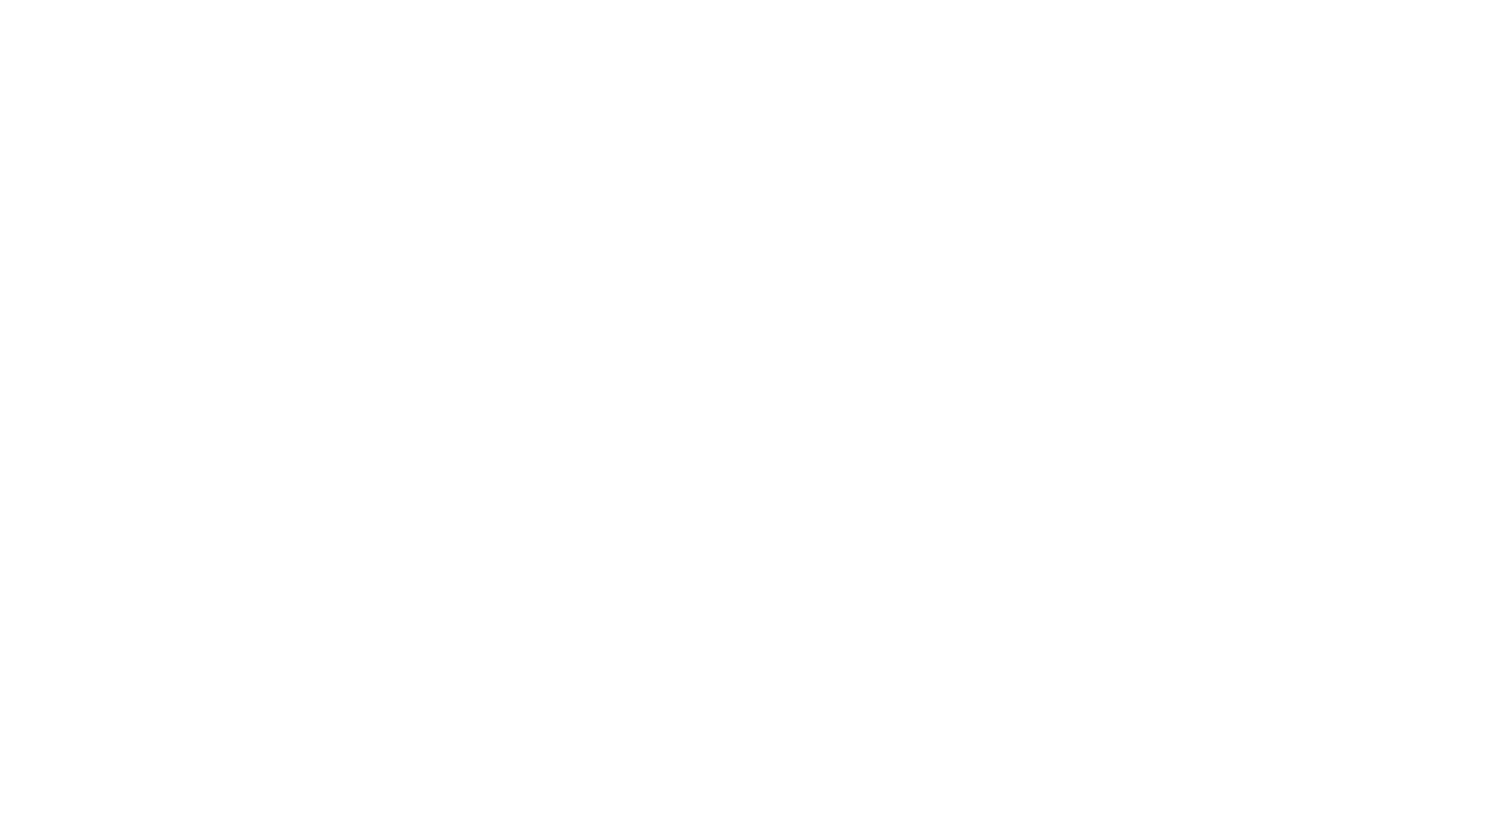 SERGIO CASADO